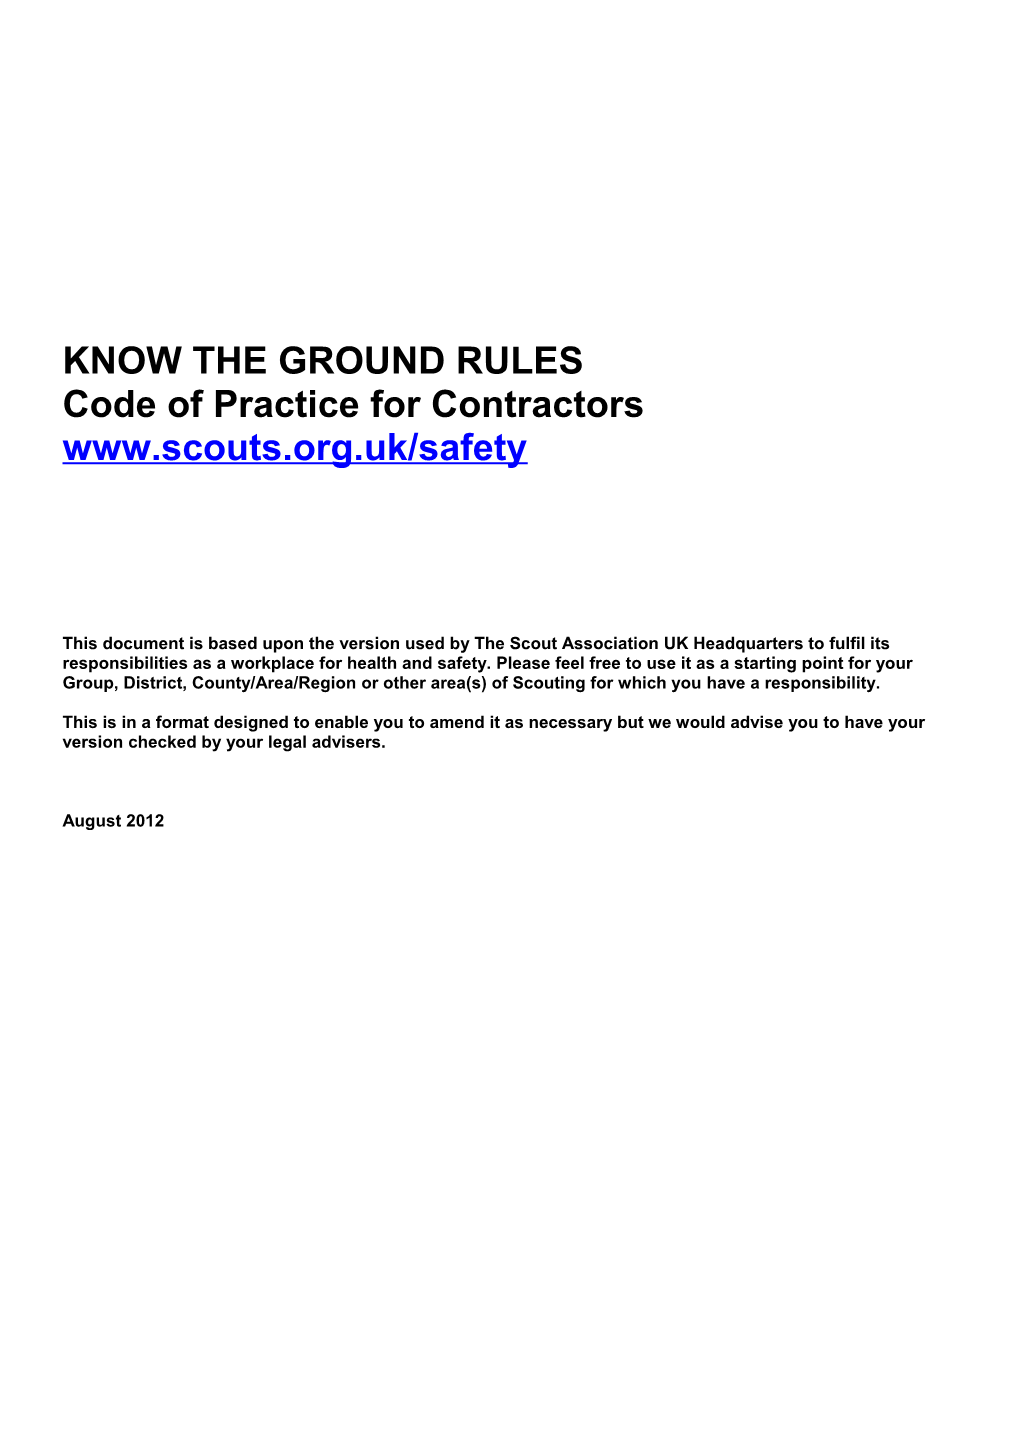 Code of Practice for Contractors